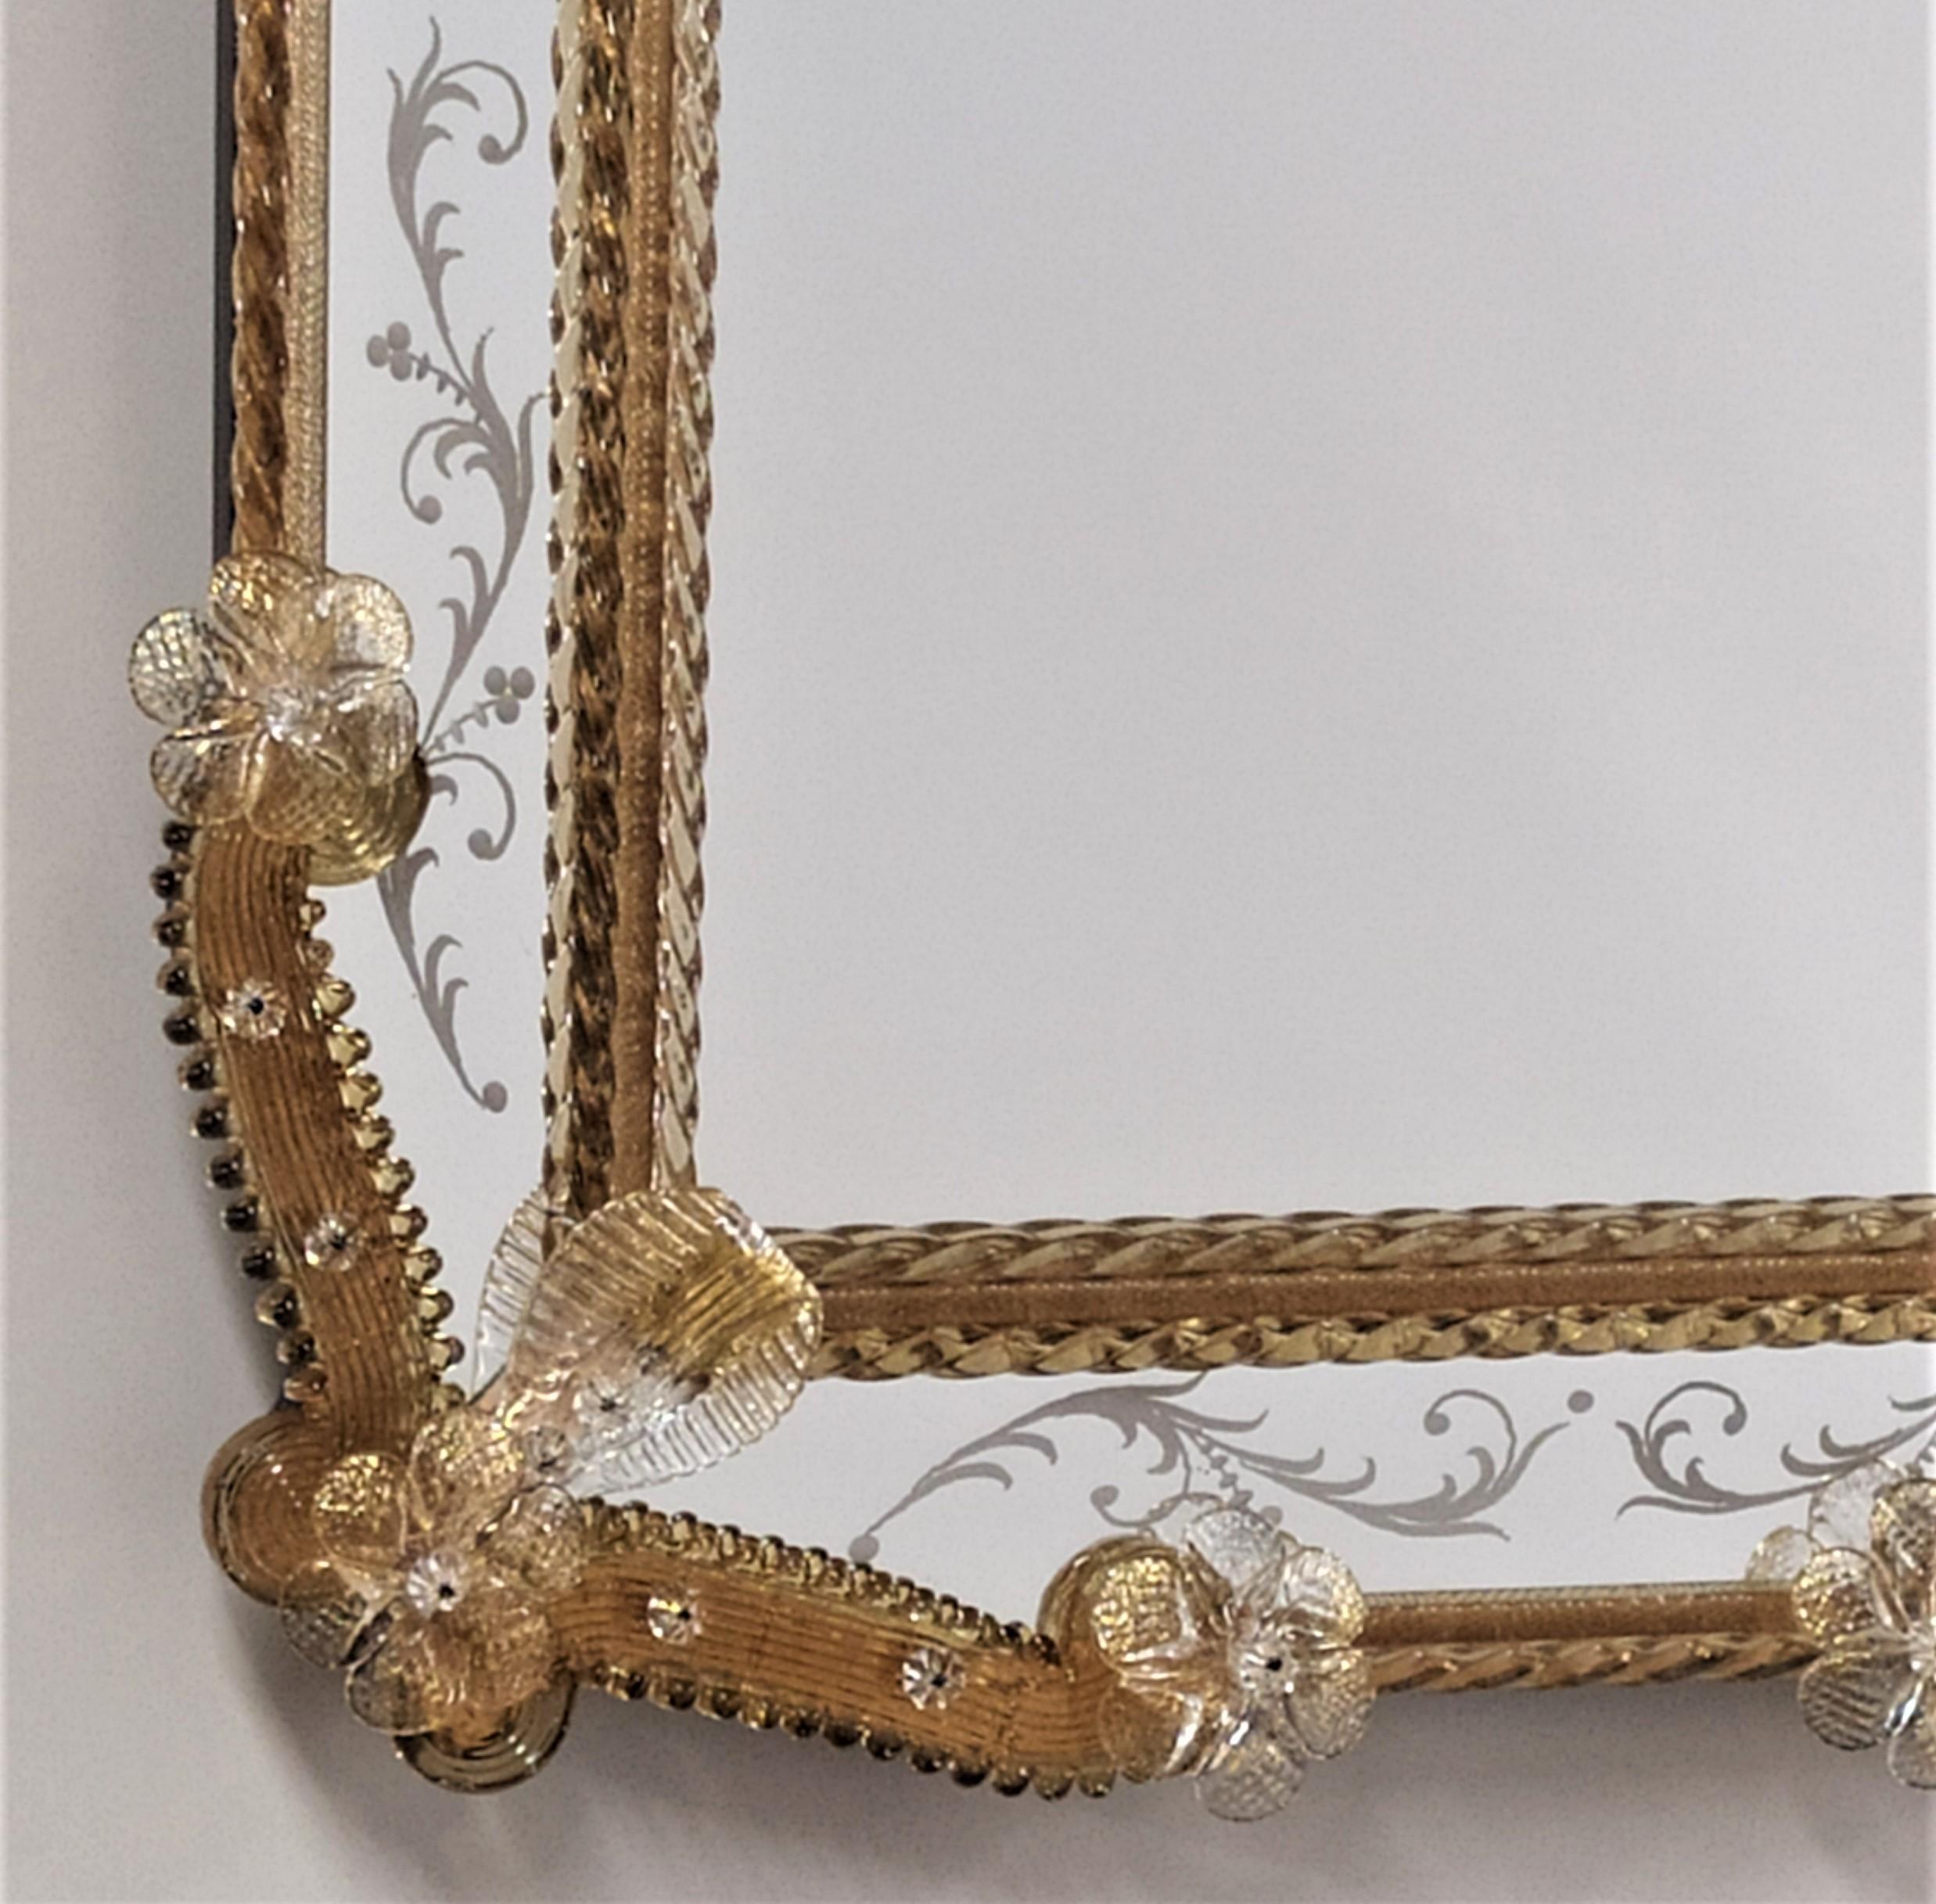 Specchio in vetro di Murano in Stile Veneziano, specchio realizzato su disegno dei Fratelli Tosi Murano, interamente lavorato a mano secondo le tecniche degli antichi 